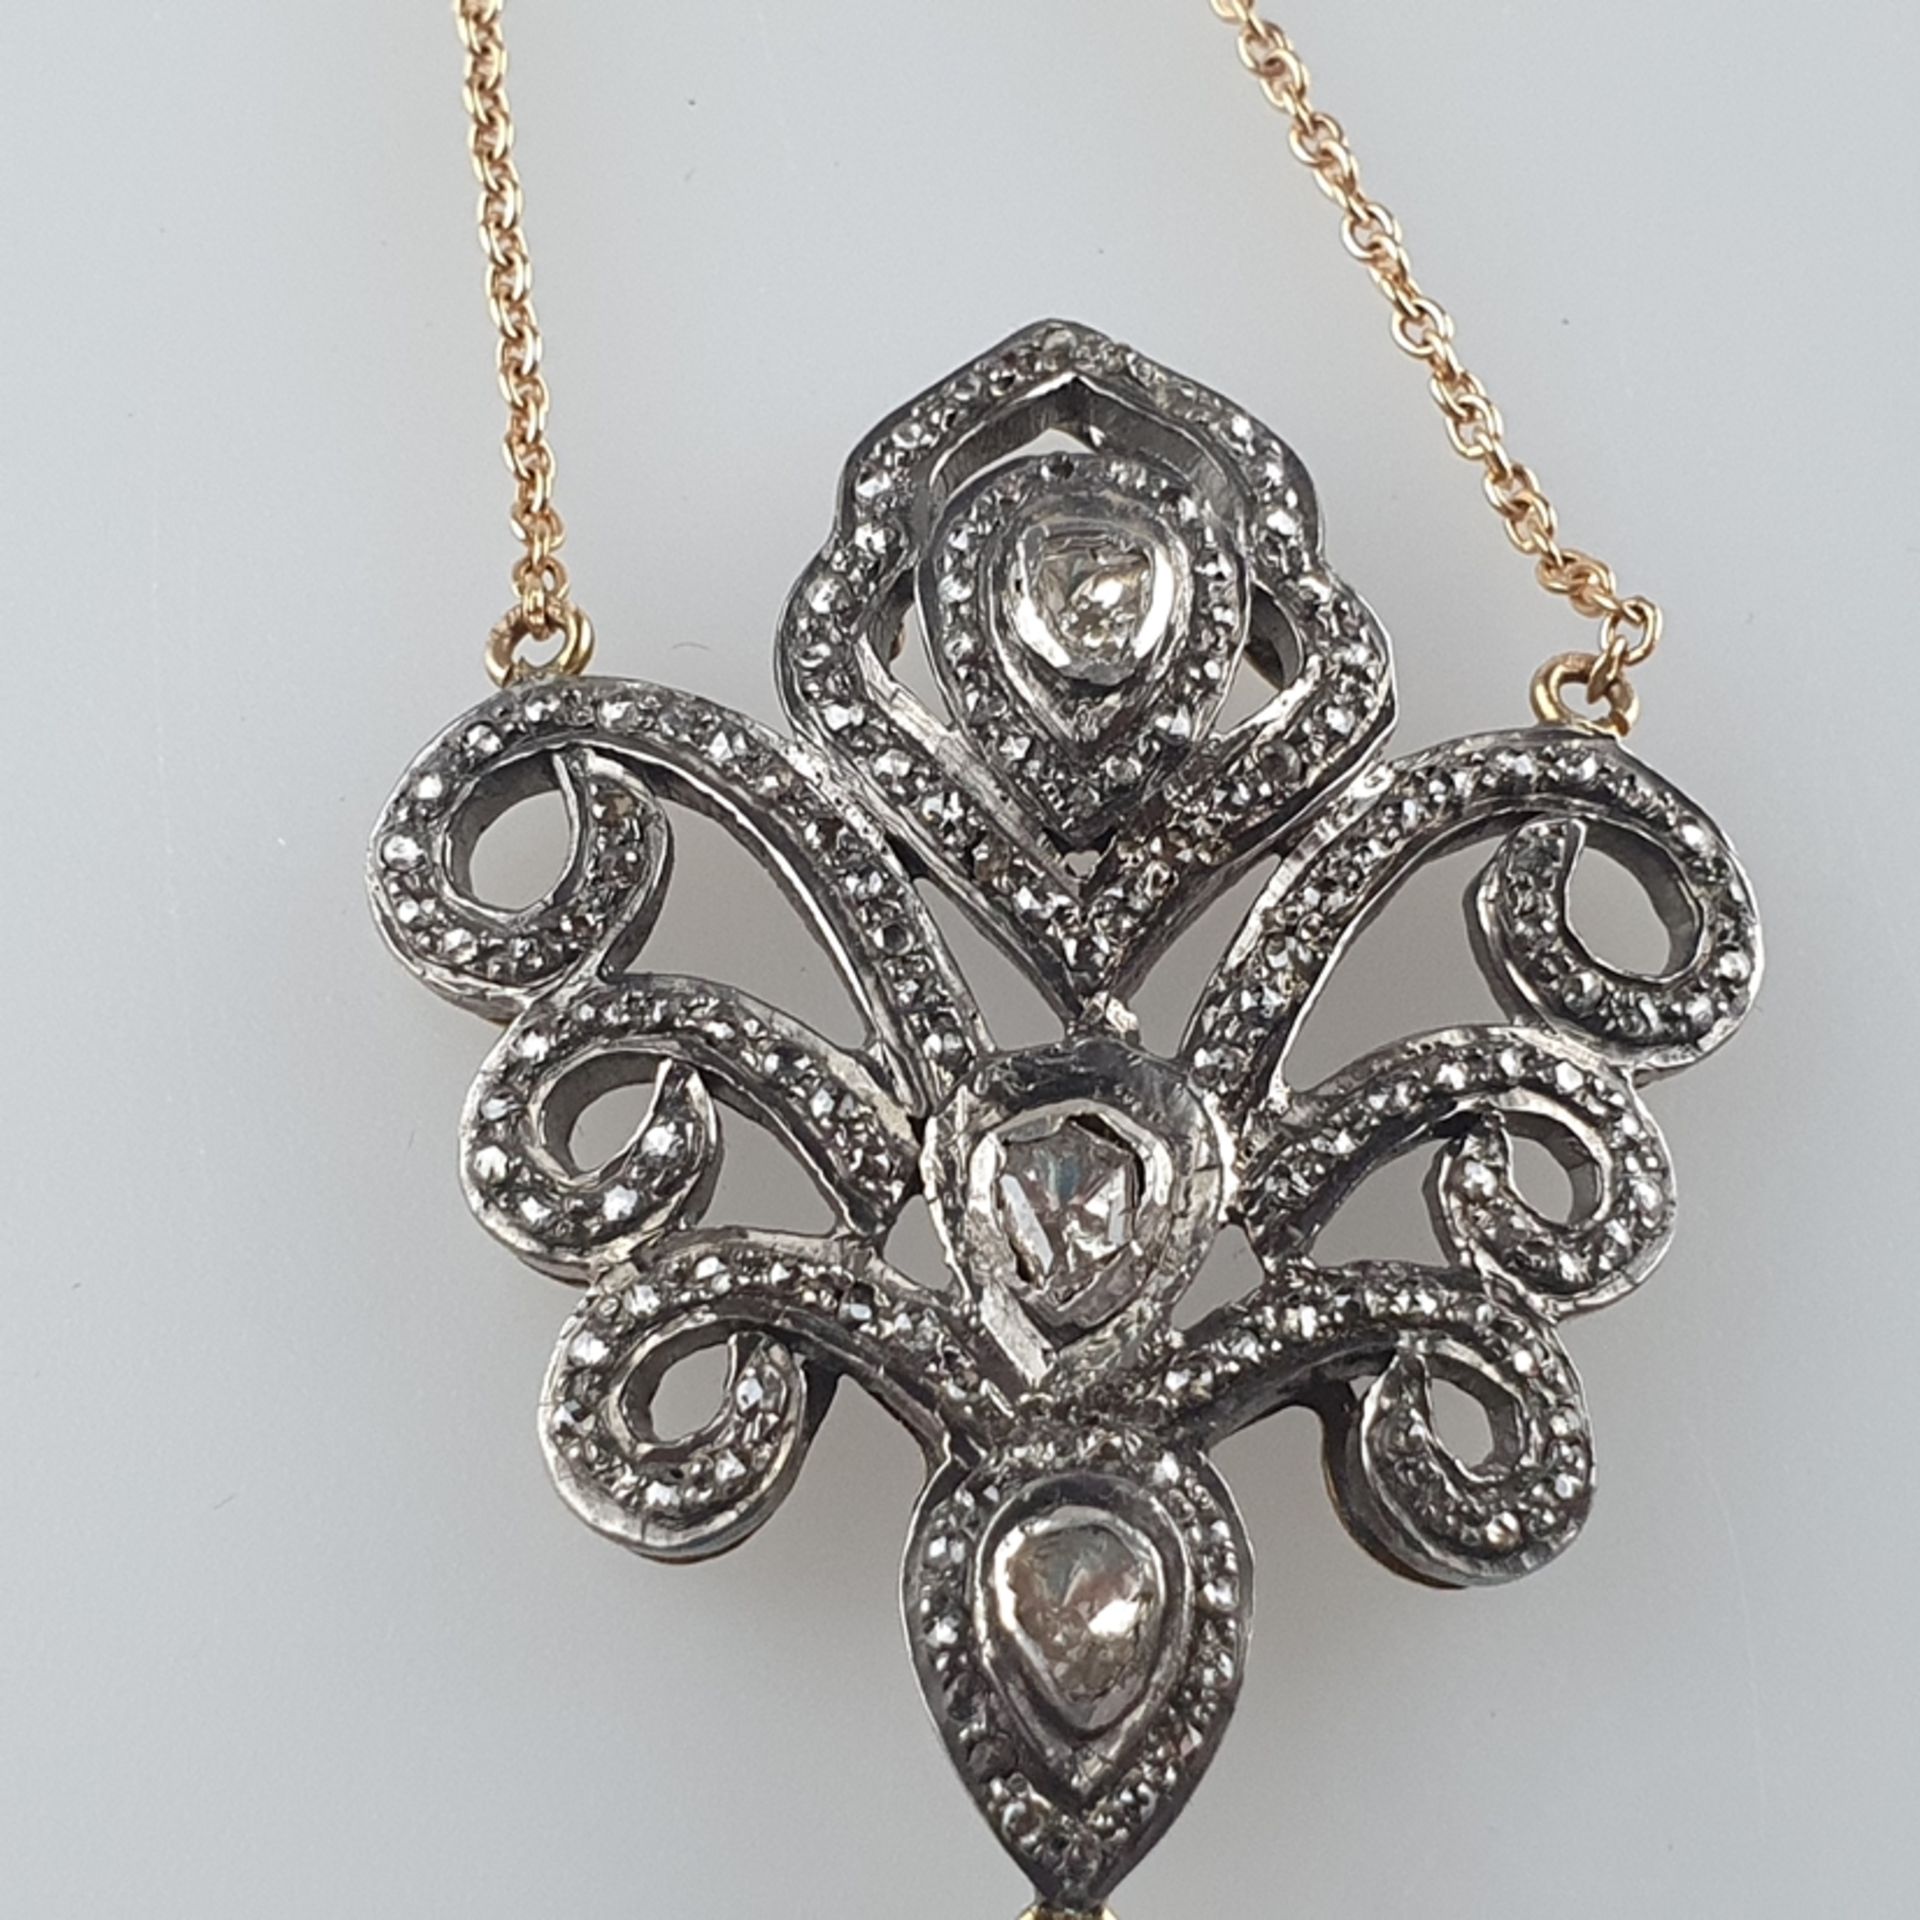 Diamantanhänger nach antikem russischem Vorbild an Kette - Silber, teils vergoldet, Anhänger in vol - Bild 5 aus 6